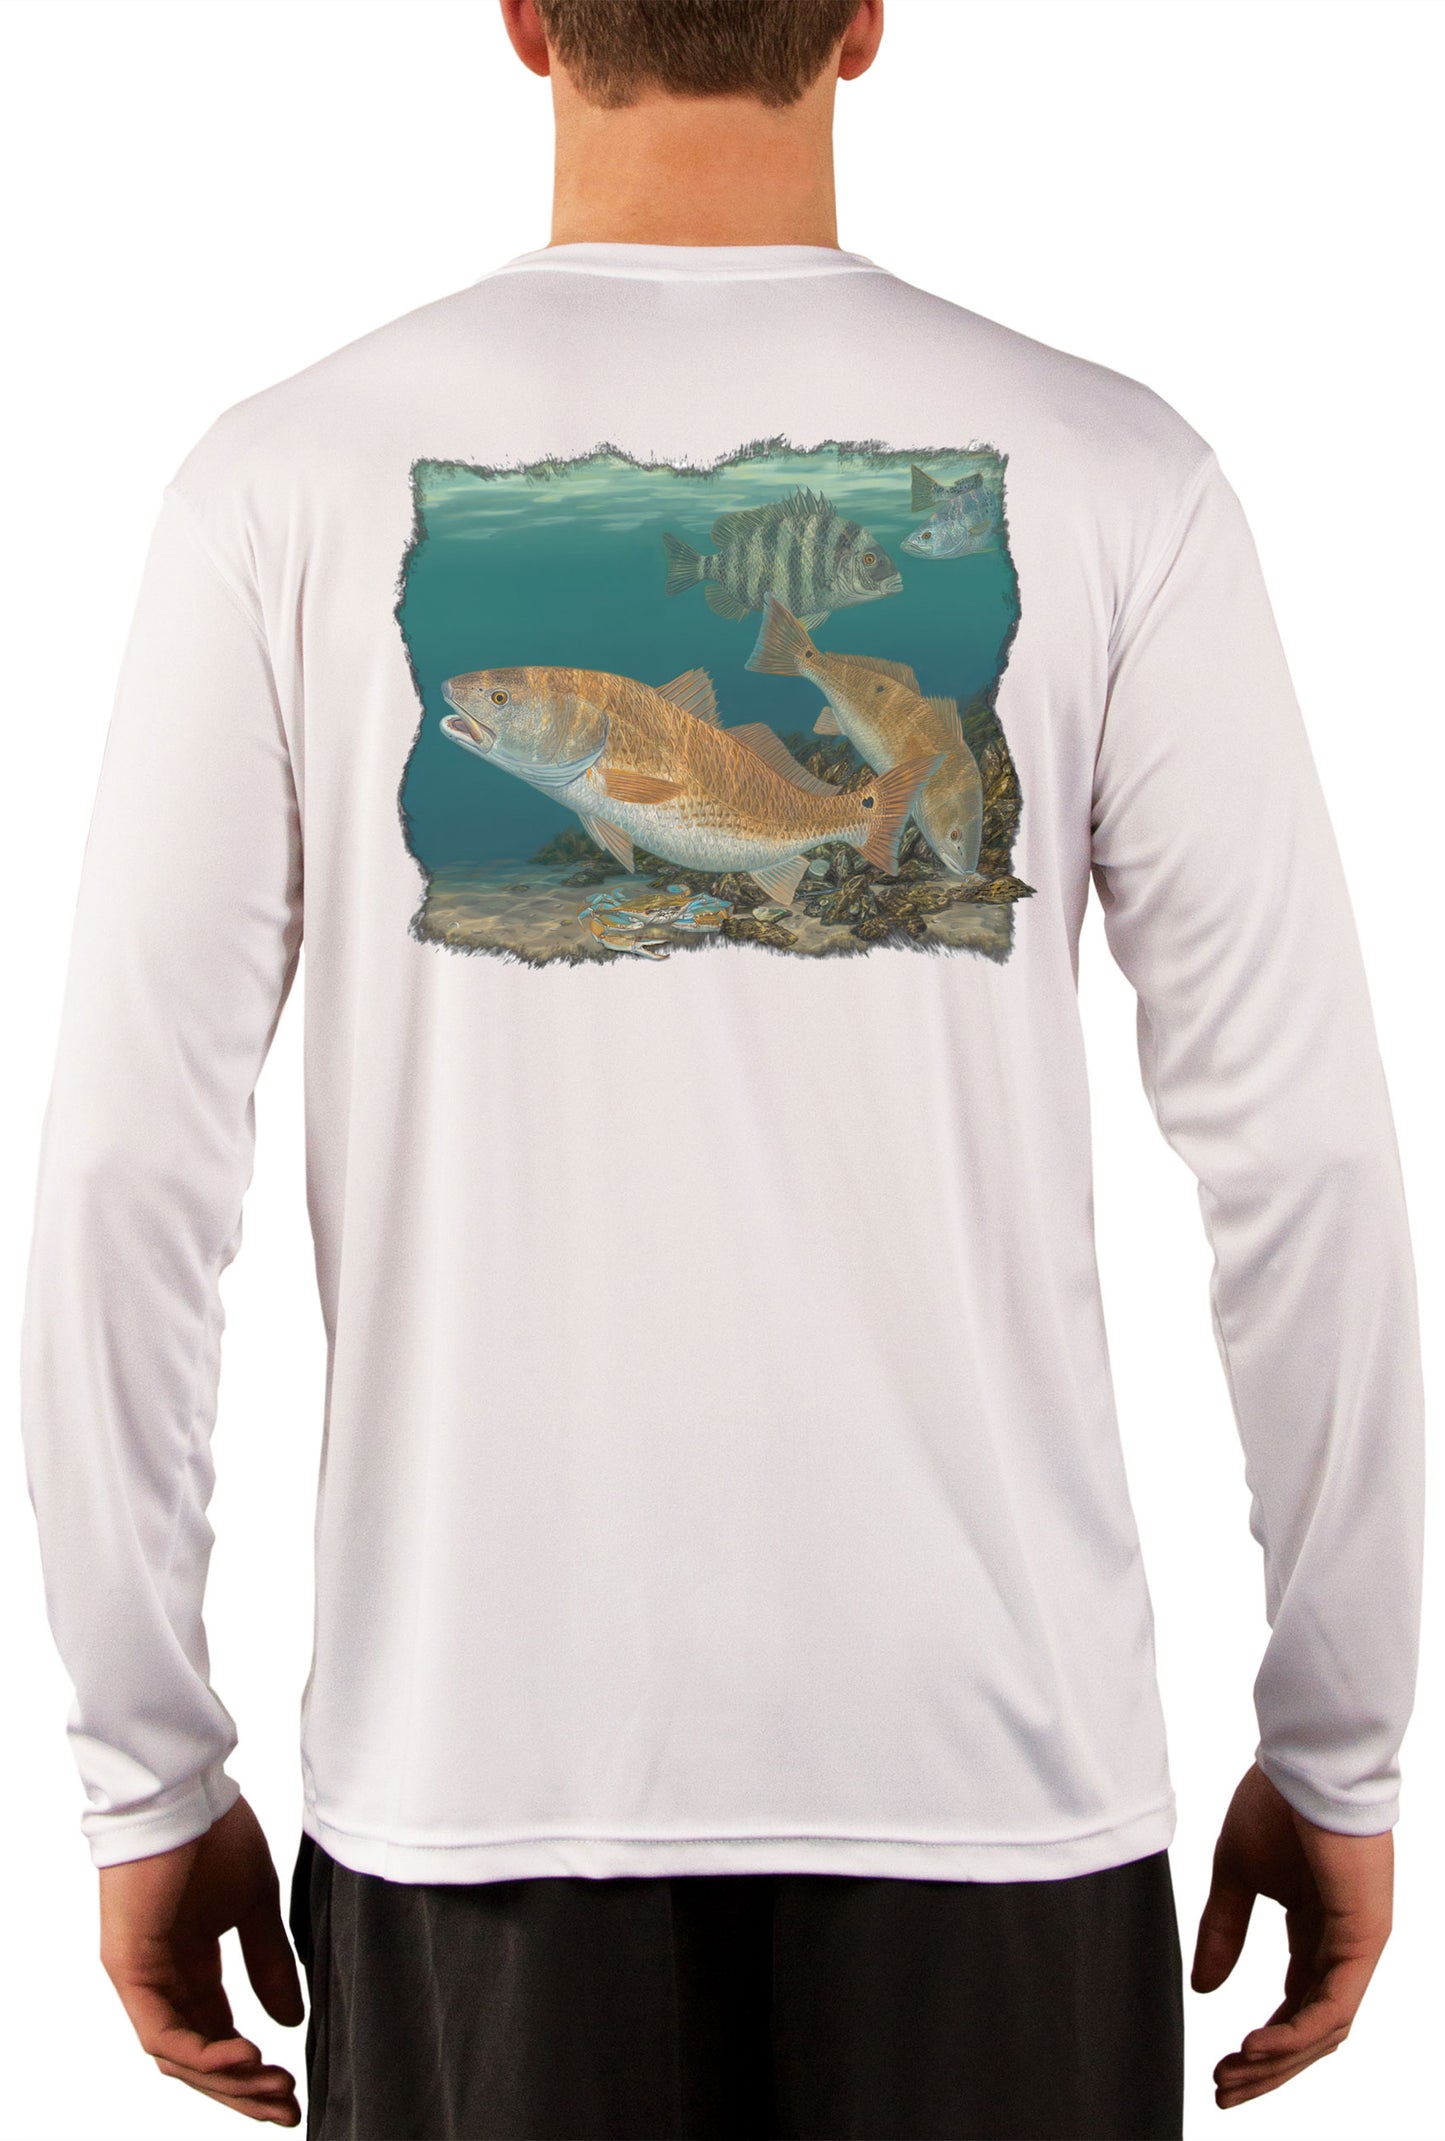 Redfish Sheepshead Design by Randy McGovern Skiff Life Fishing Shirts For Men - Skiff Life